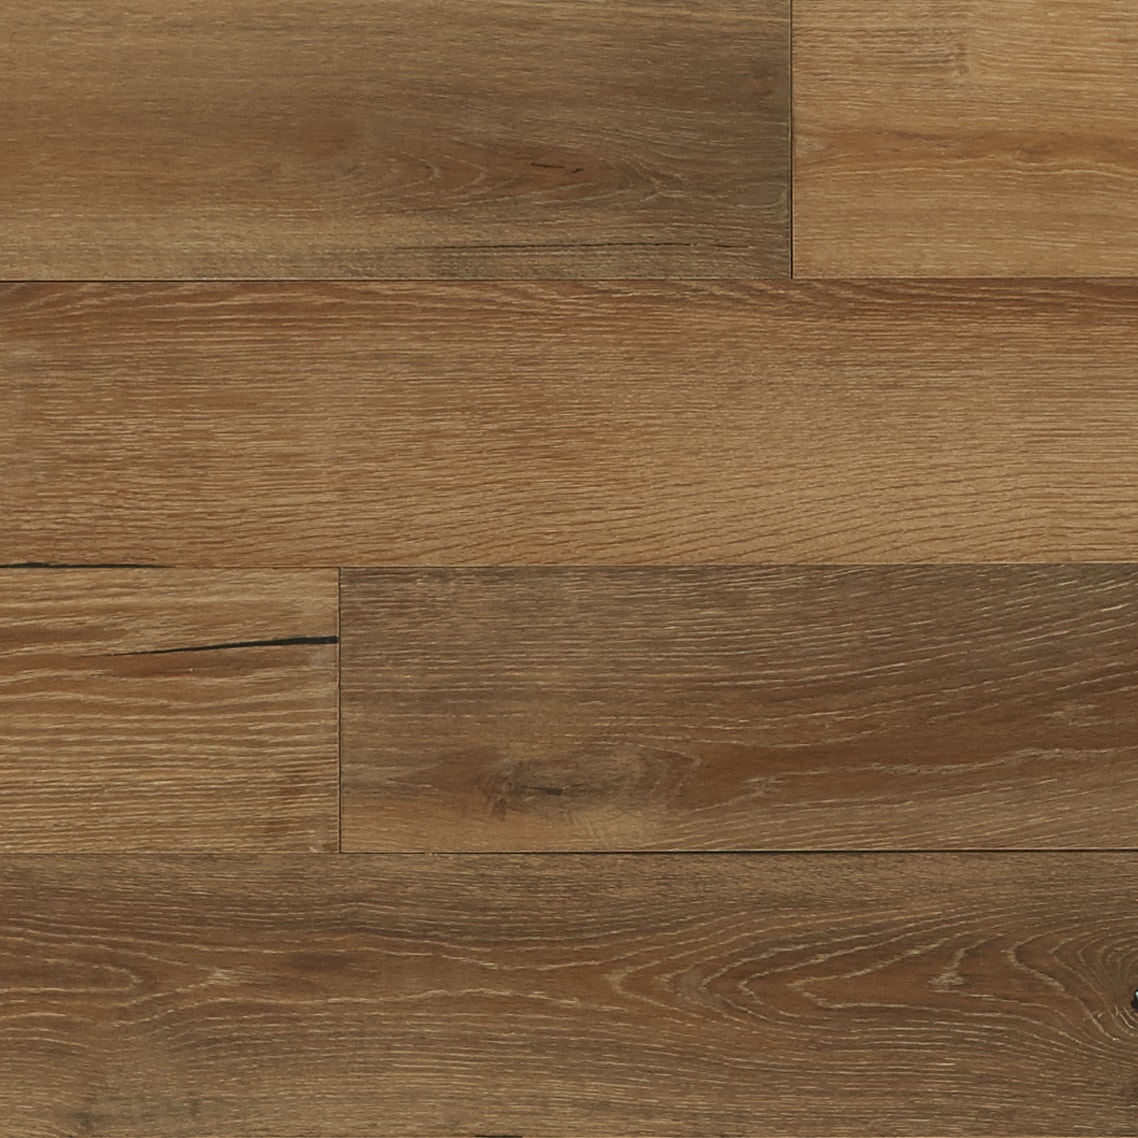 Bruce Nature Of Wood Premium Golden Oak, Golden Oak Engineered Hardwood Flooring